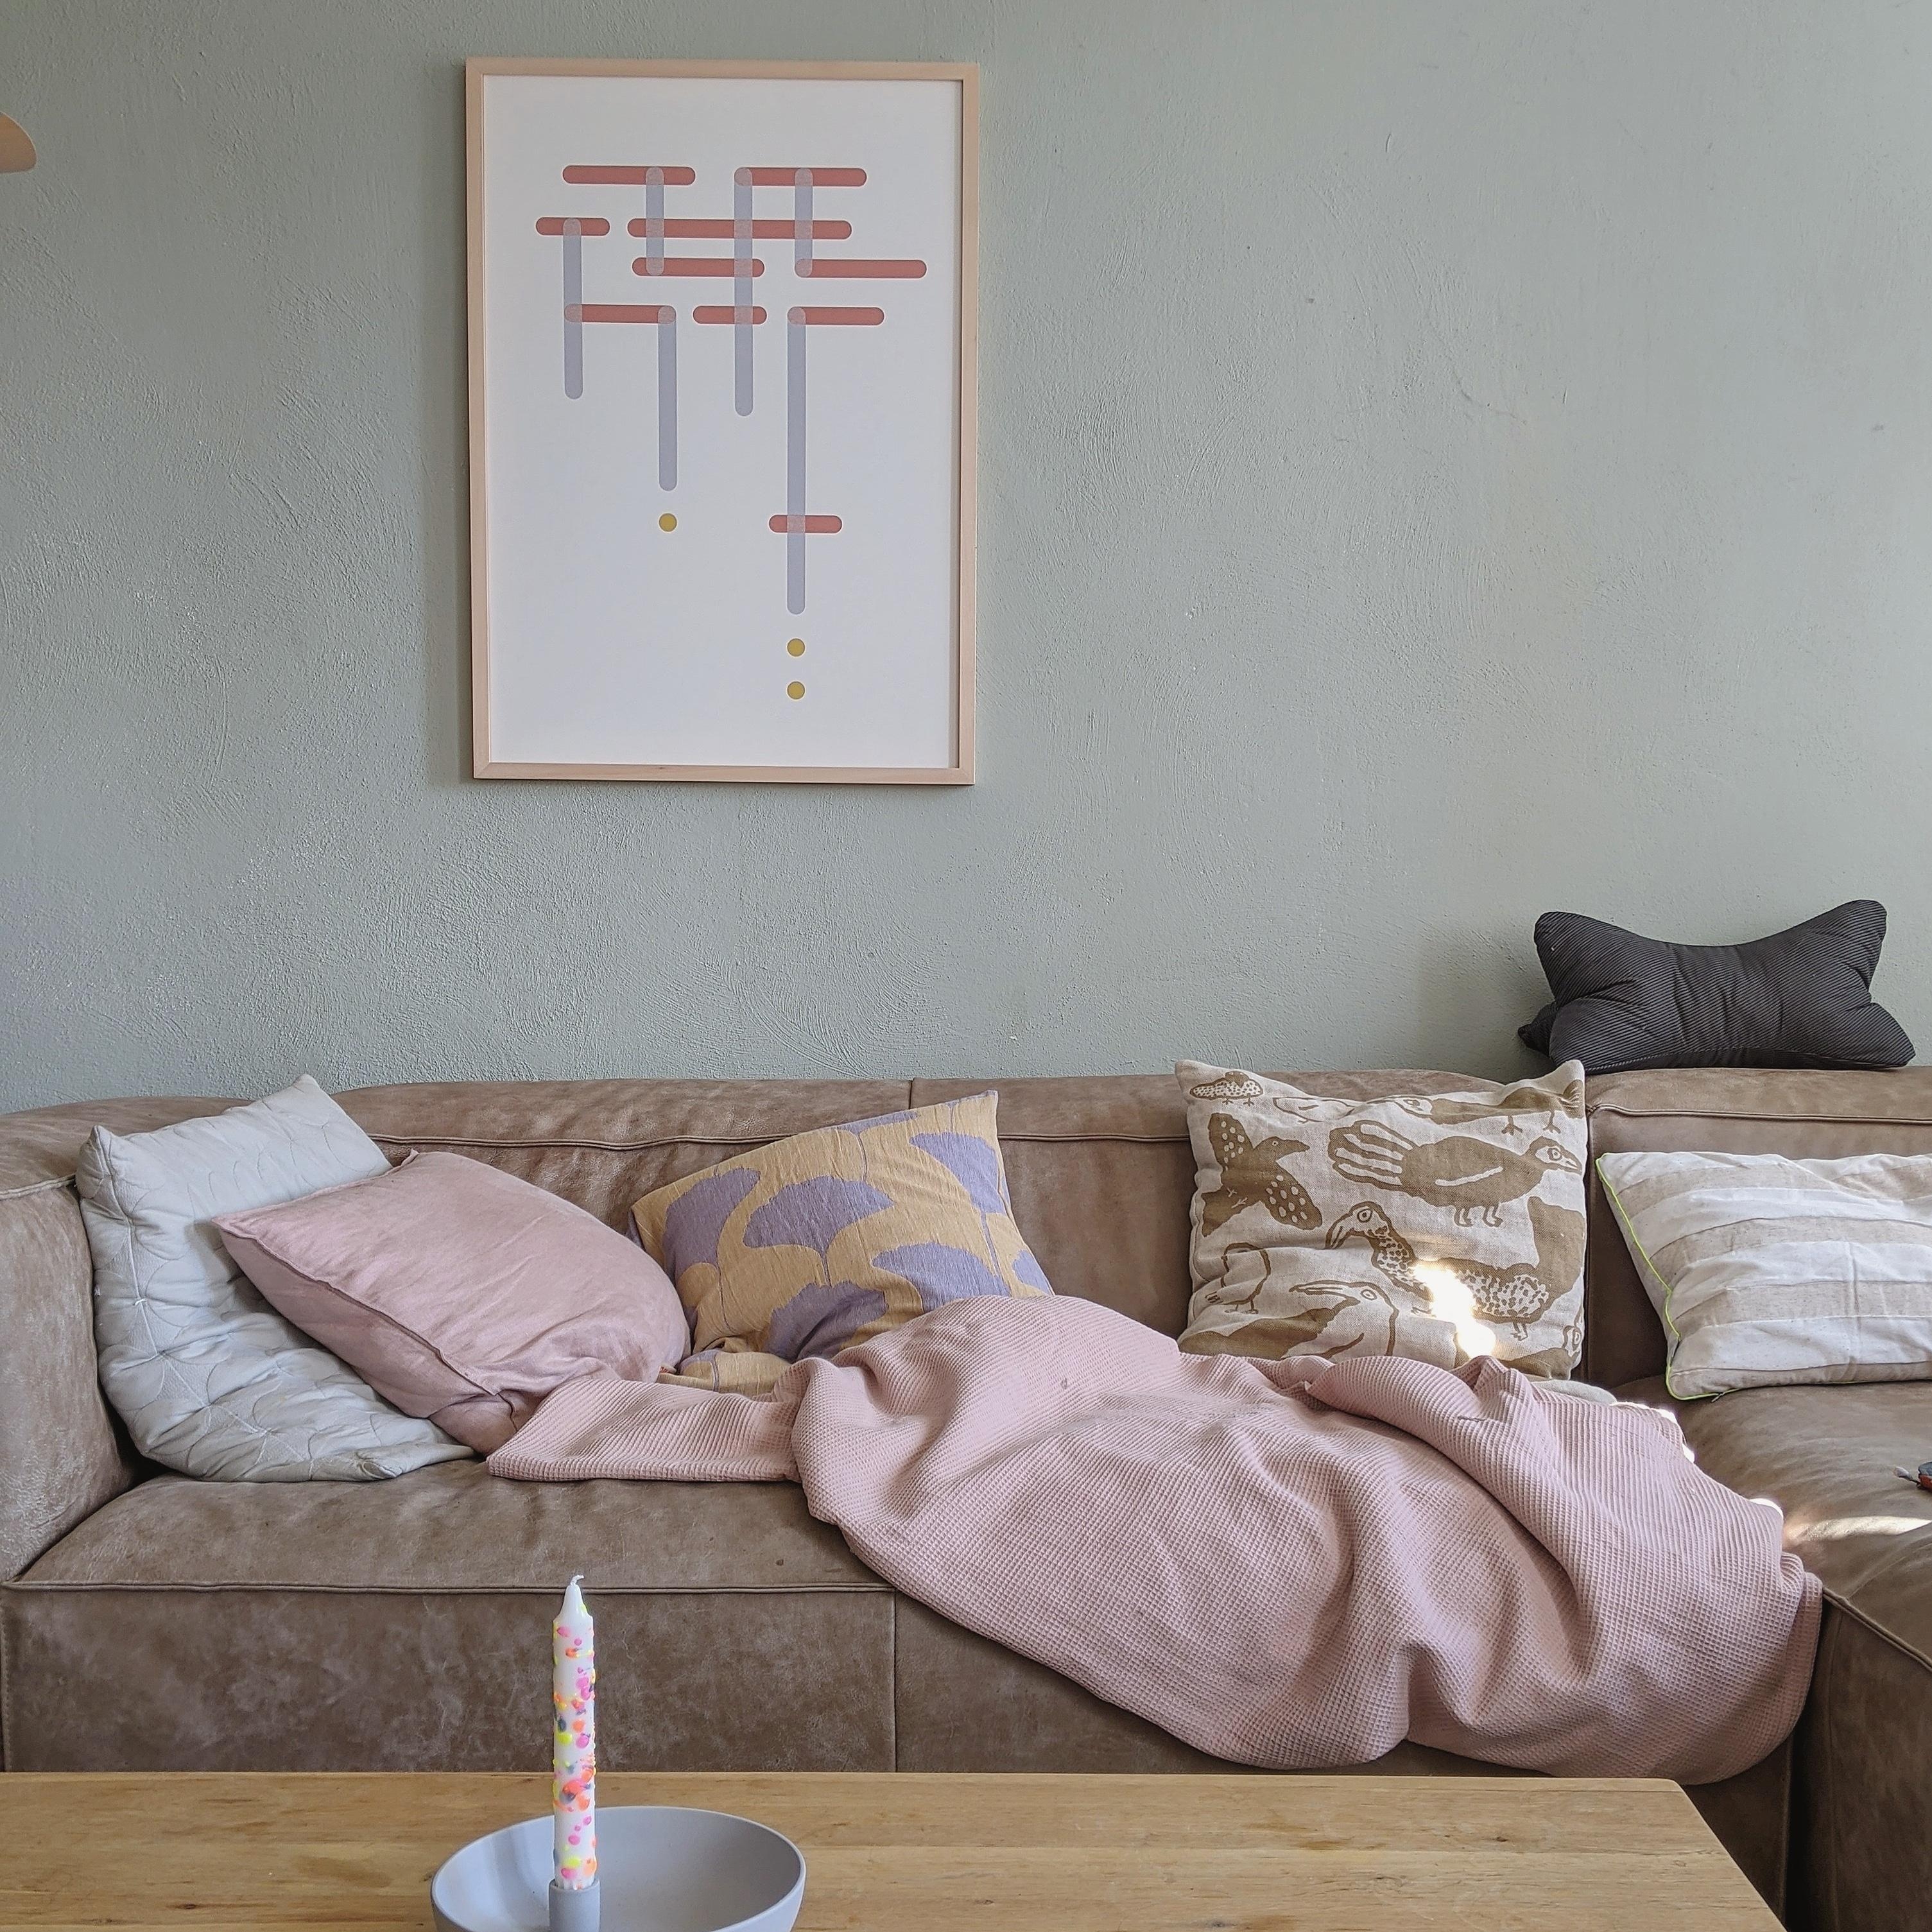 #livingroom #homedecor #interior#decoration#altbau #homestory#hygge#wohnzimmer #couchstyle#scandinavisch#living#cozy